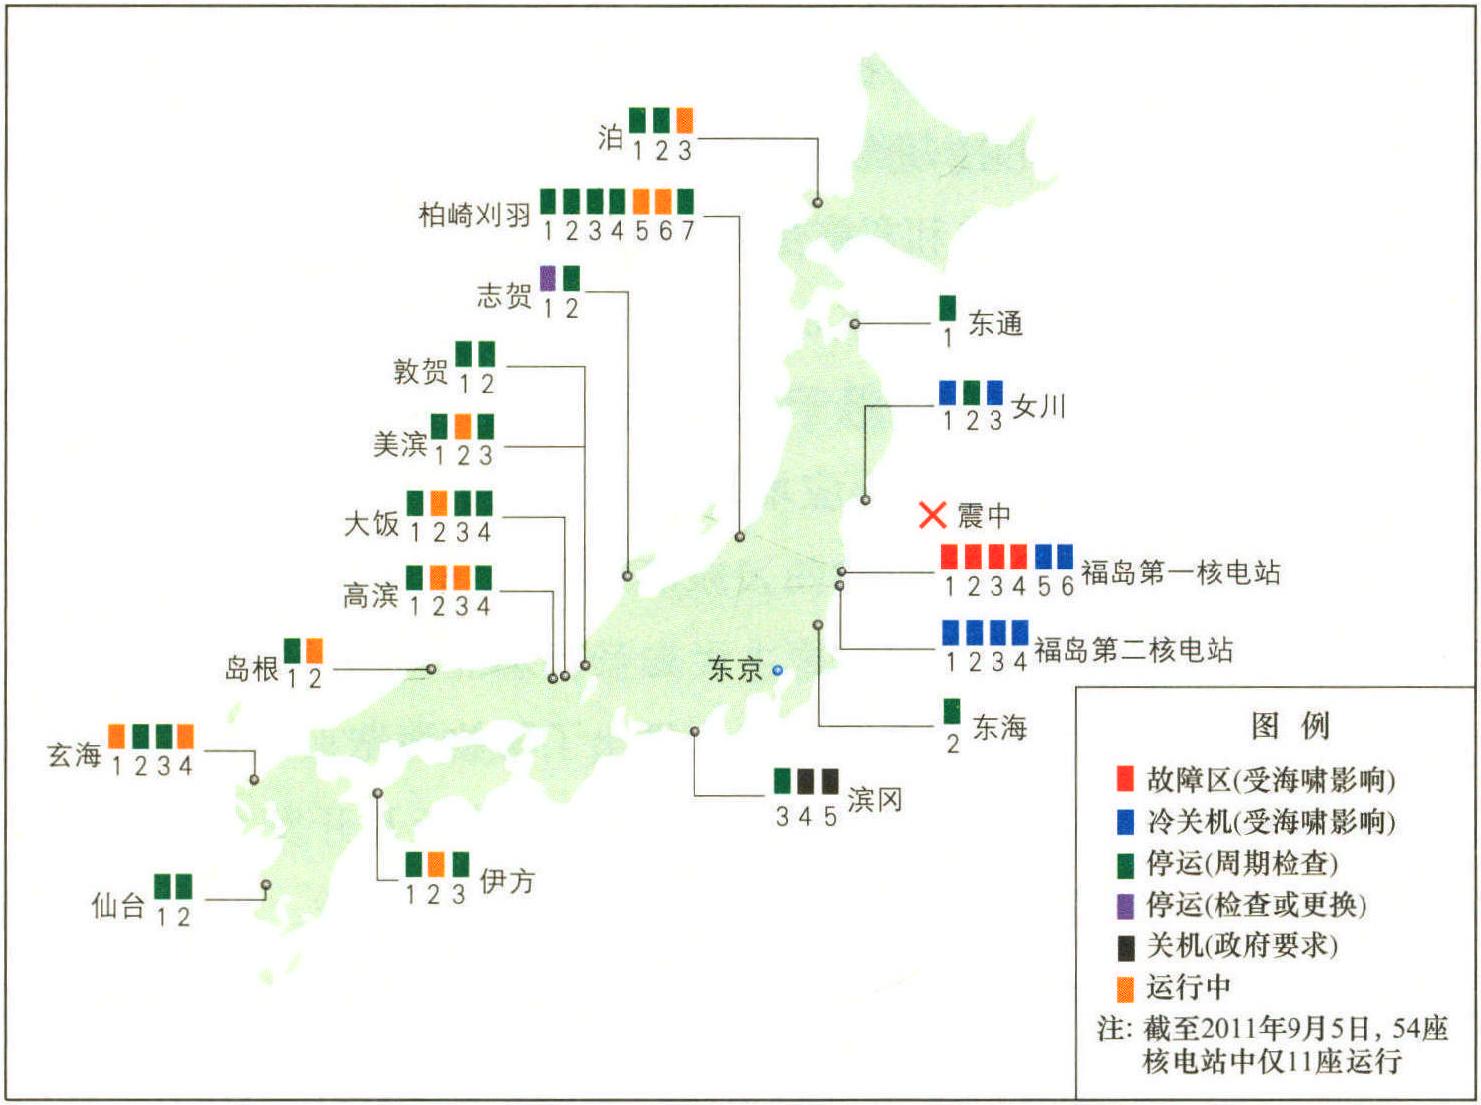 1.2.3 日本能源战略调整